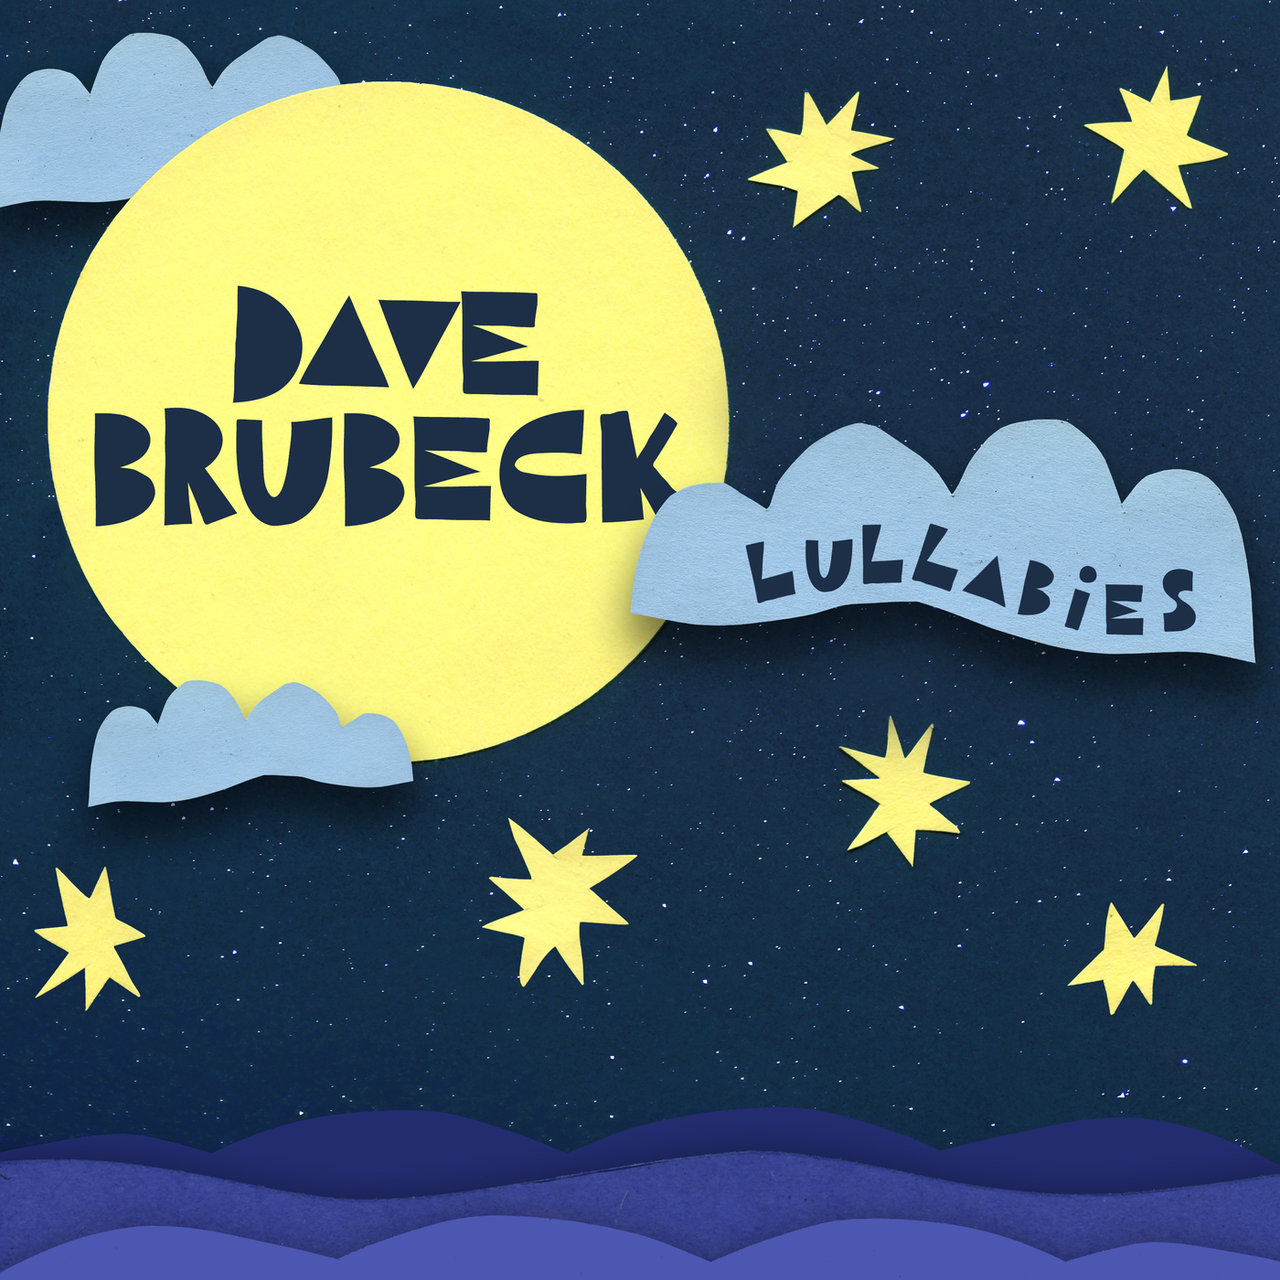 Dave Brubeck - Lullabies (2020) [FLAC 24bit/48kHz]